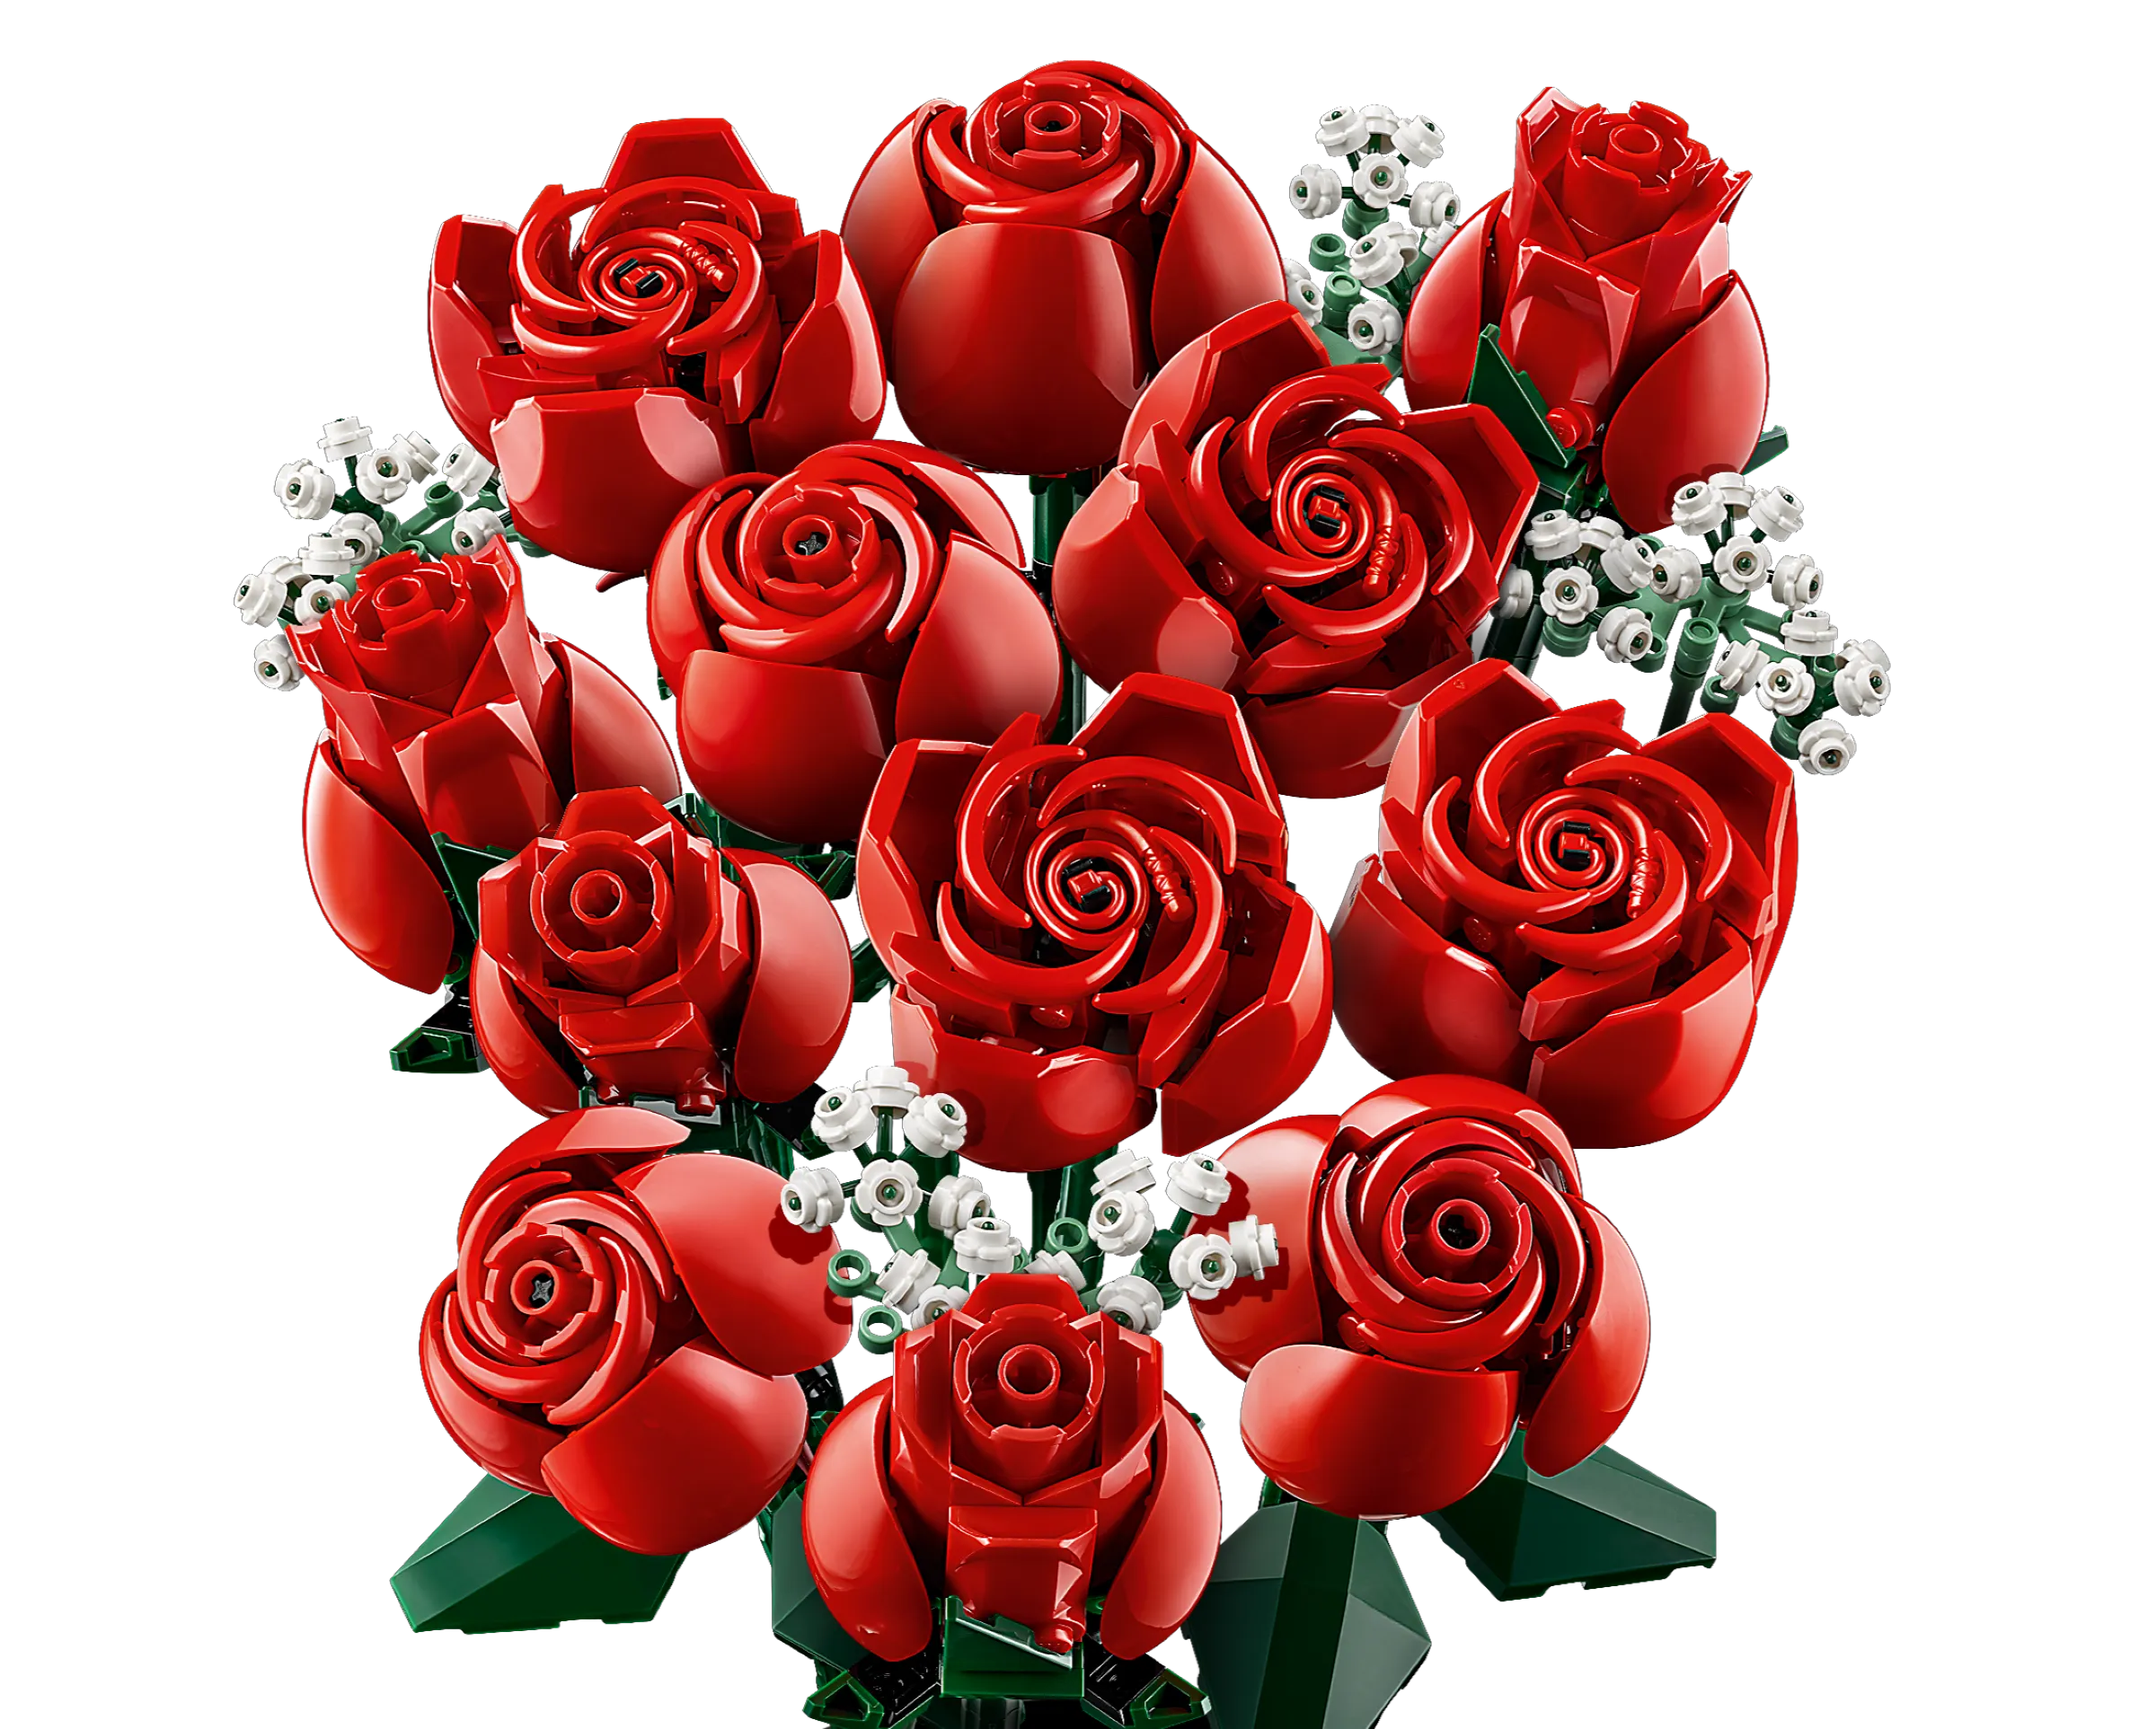 LEGO Icons Bouquet of Roses • Set 10328 • SetDB